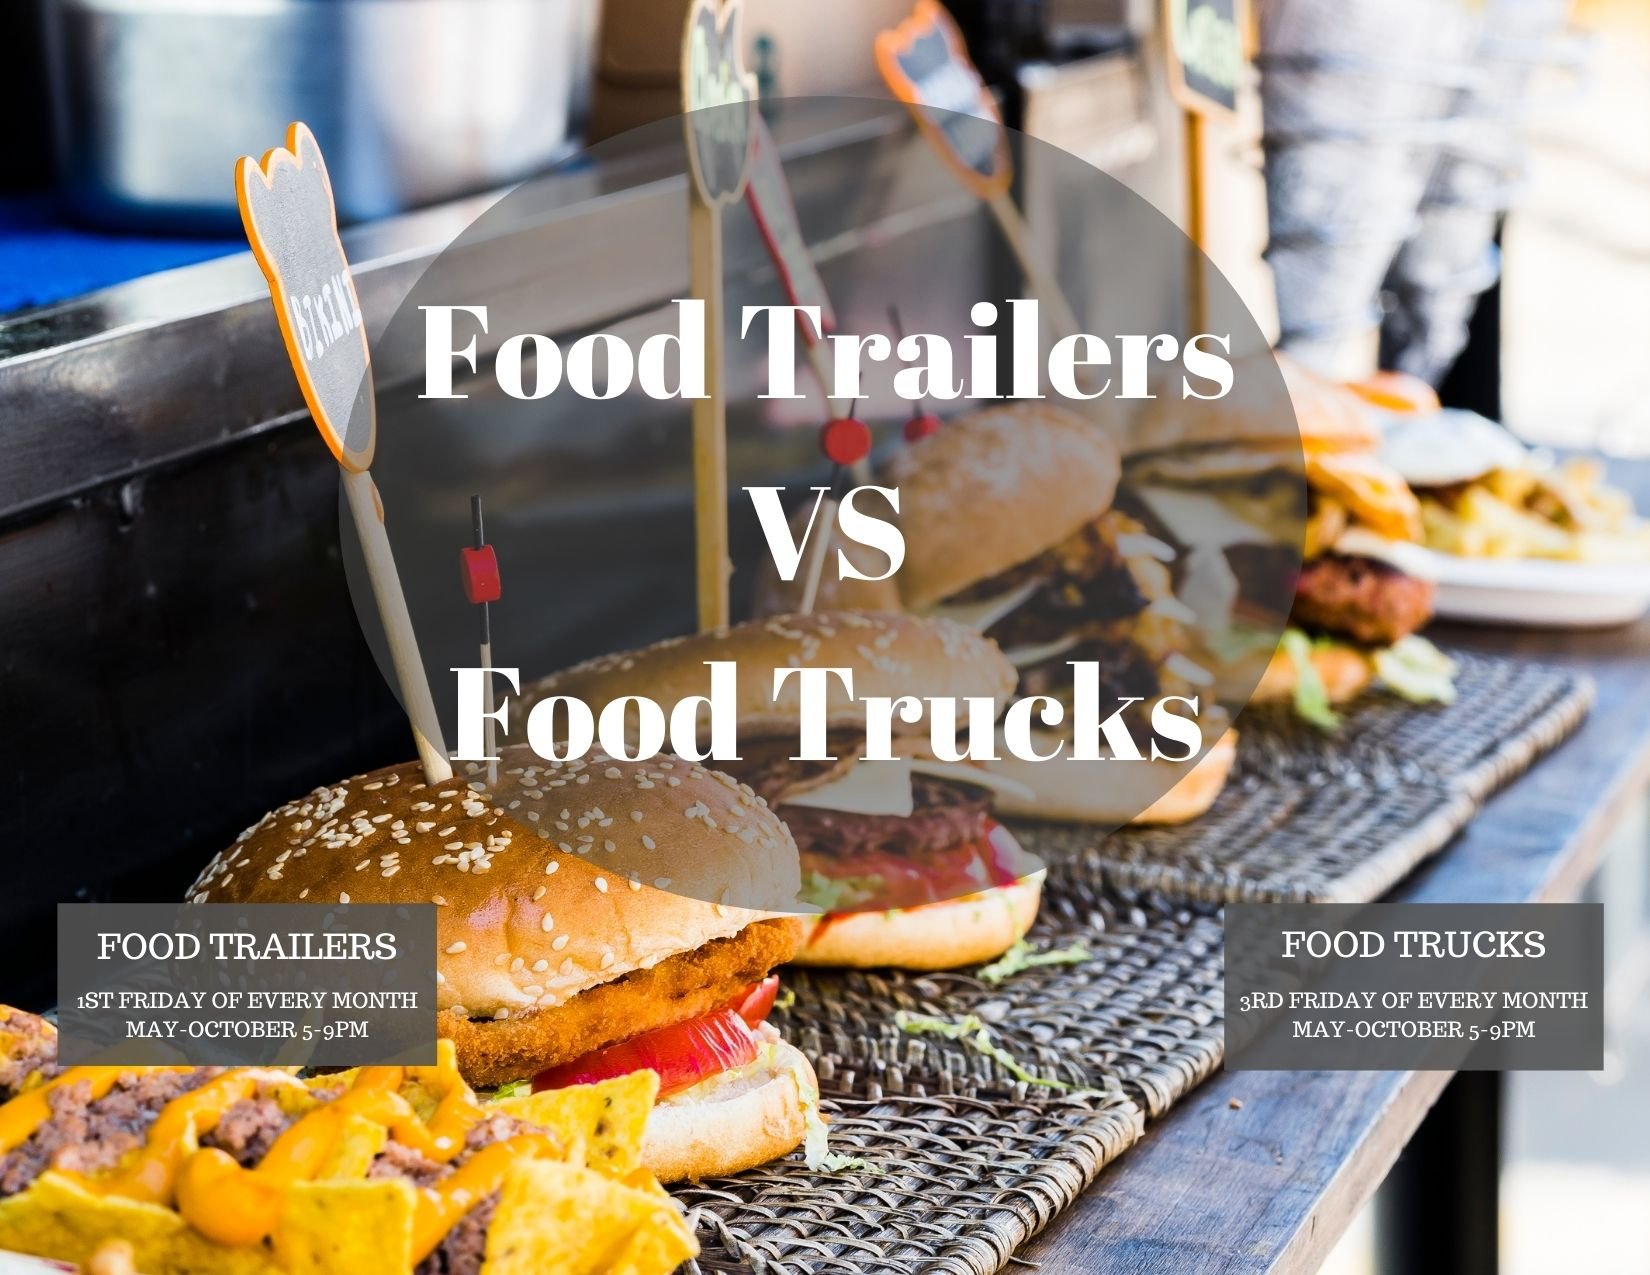 Food Trailers Vs Food Trucks 2021